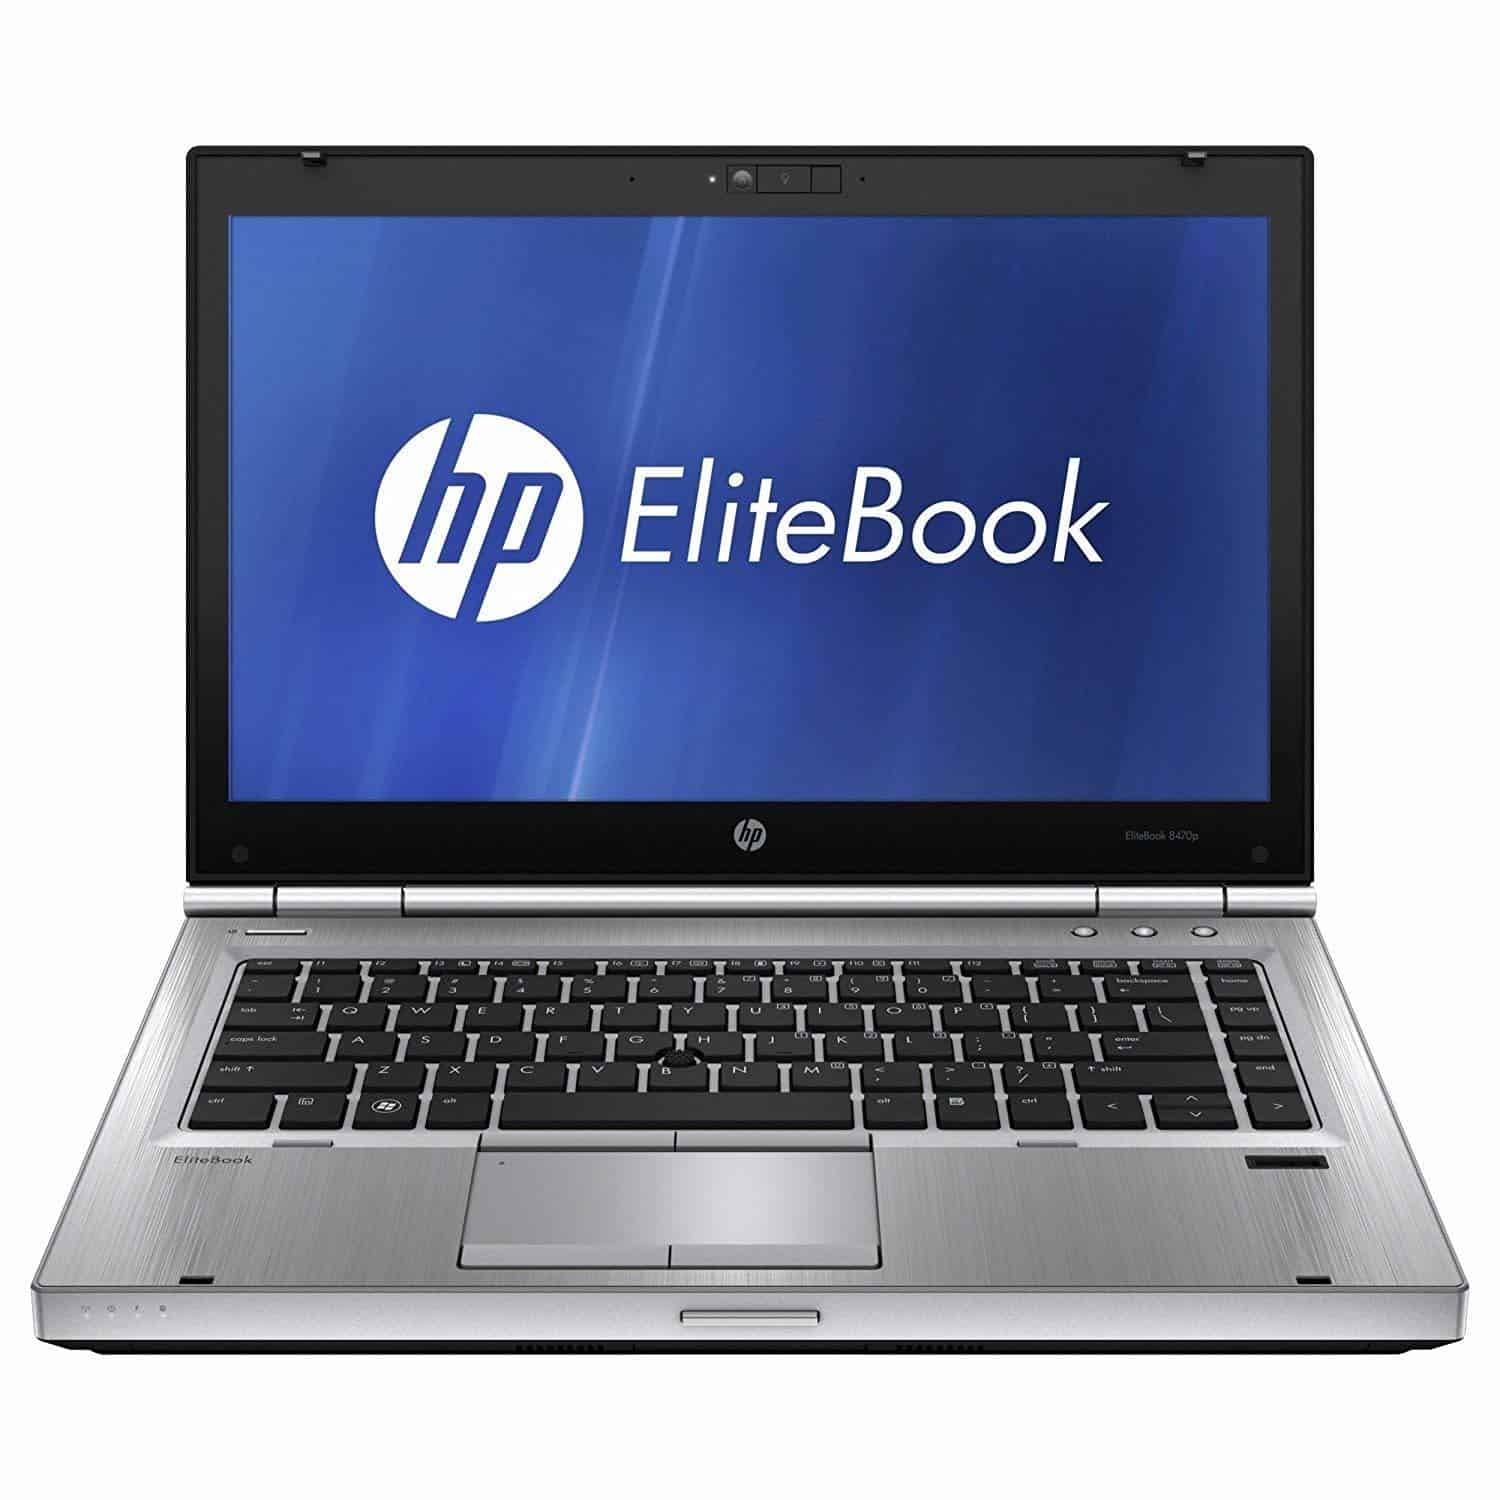 HP EliteBook 8470p Laptop Refurbished Review